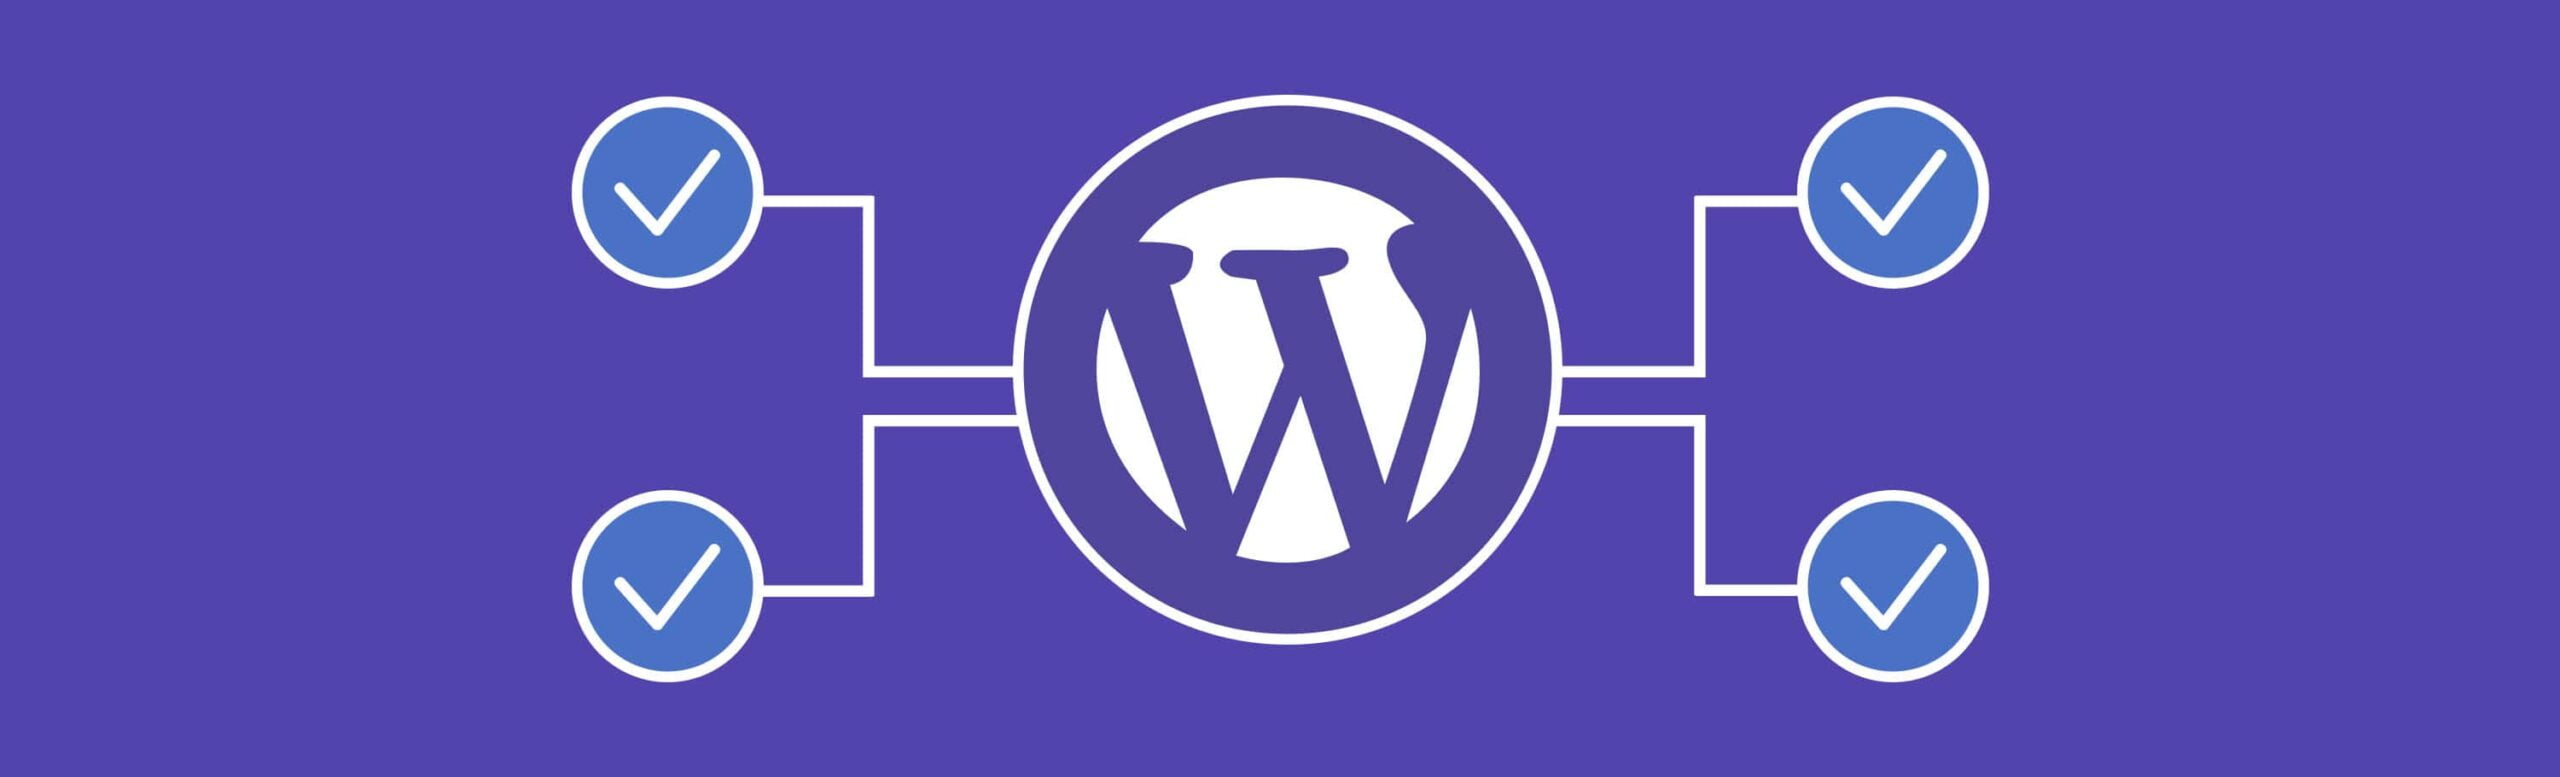 Weekly WordPress Maintenance Checklist - Update WordPress Software - HostNamaste